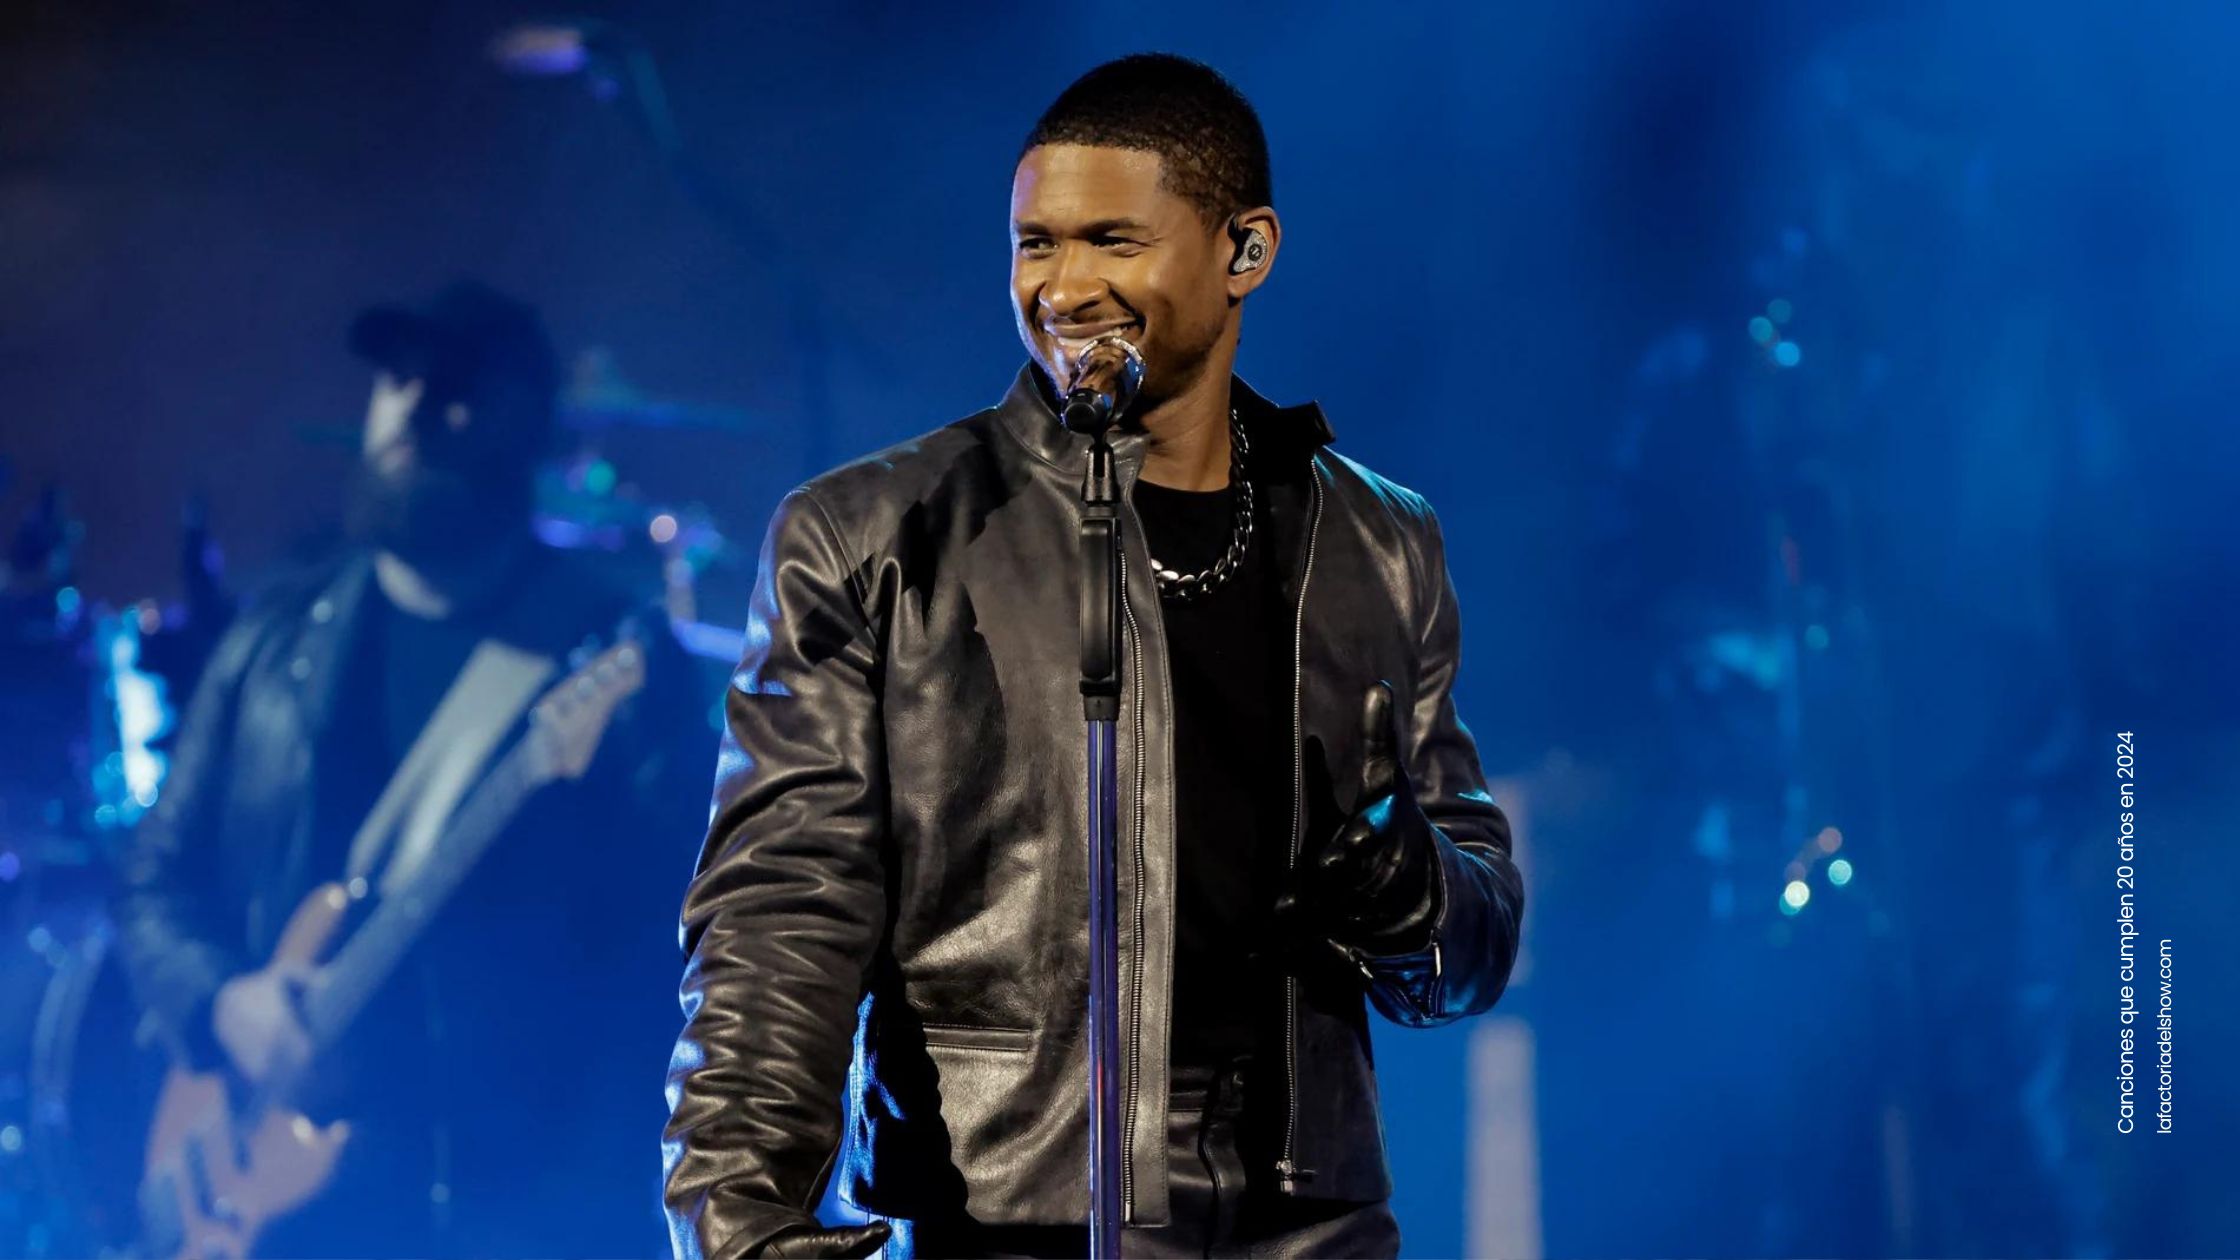 La canción Yeah! de Usher cumple 20 años en 2004